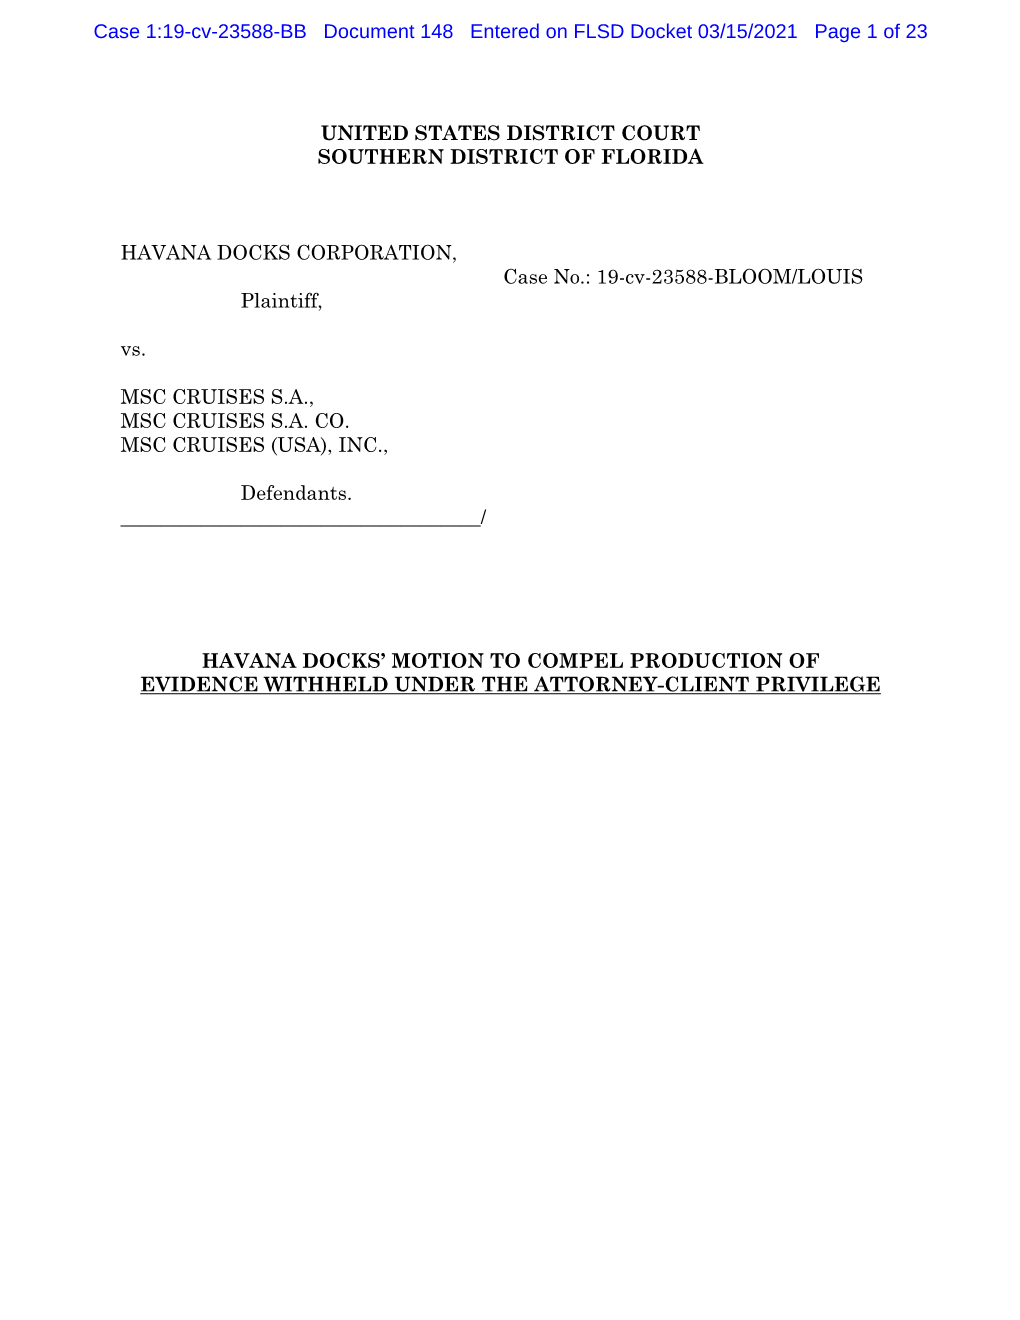 Case 1:19-Cv-23588-BB Document 148 Entered on FLSD Docket 03/15/2021 Page 1 of 23